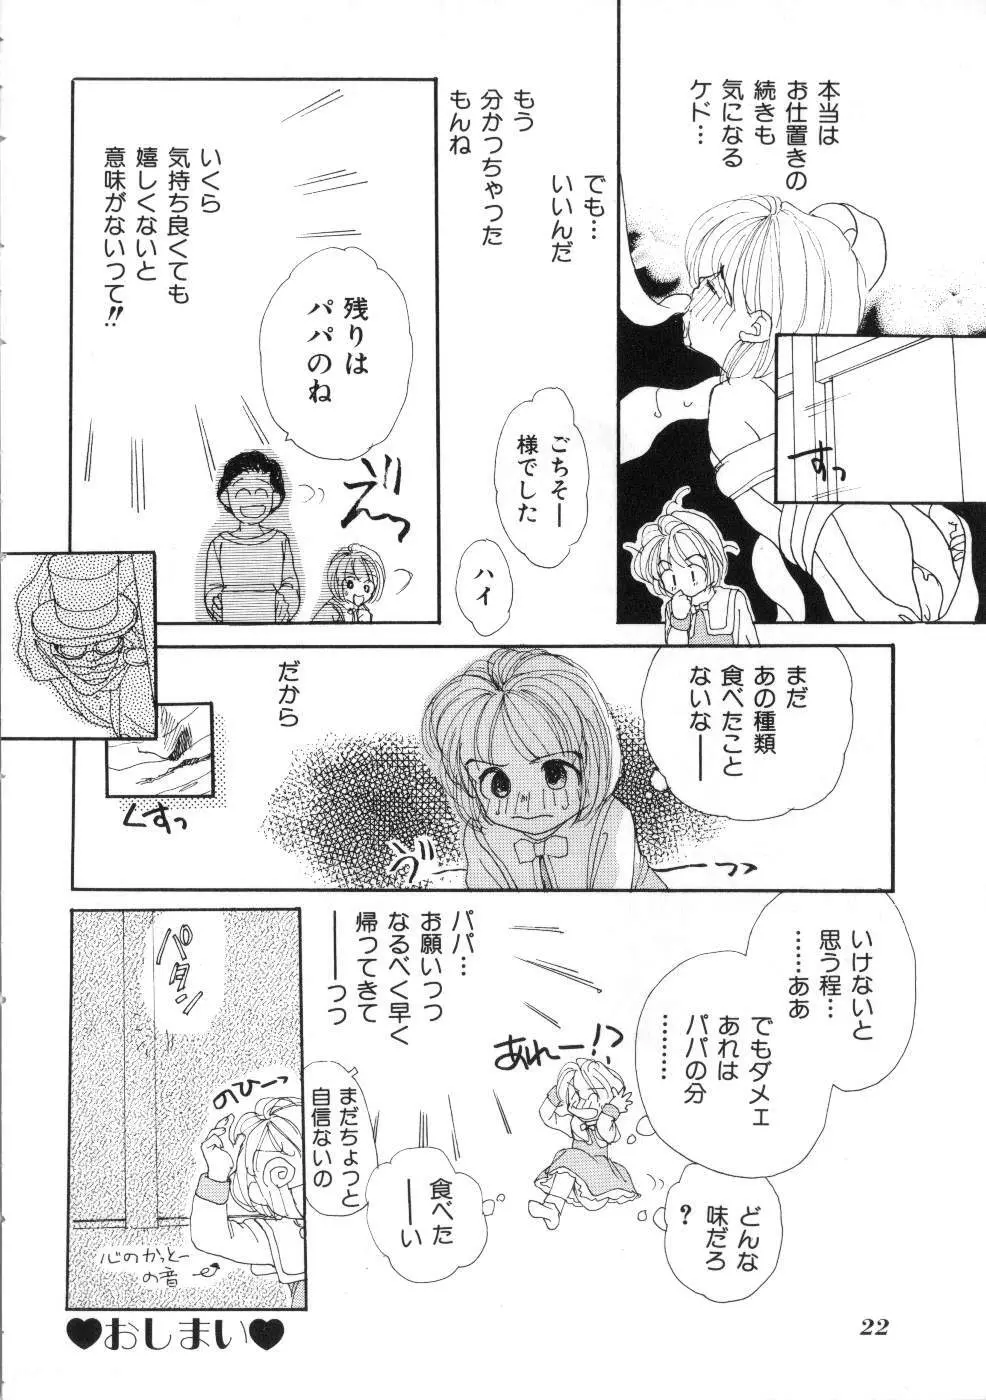 Miss ちゃいどる vol. 1 22ページ